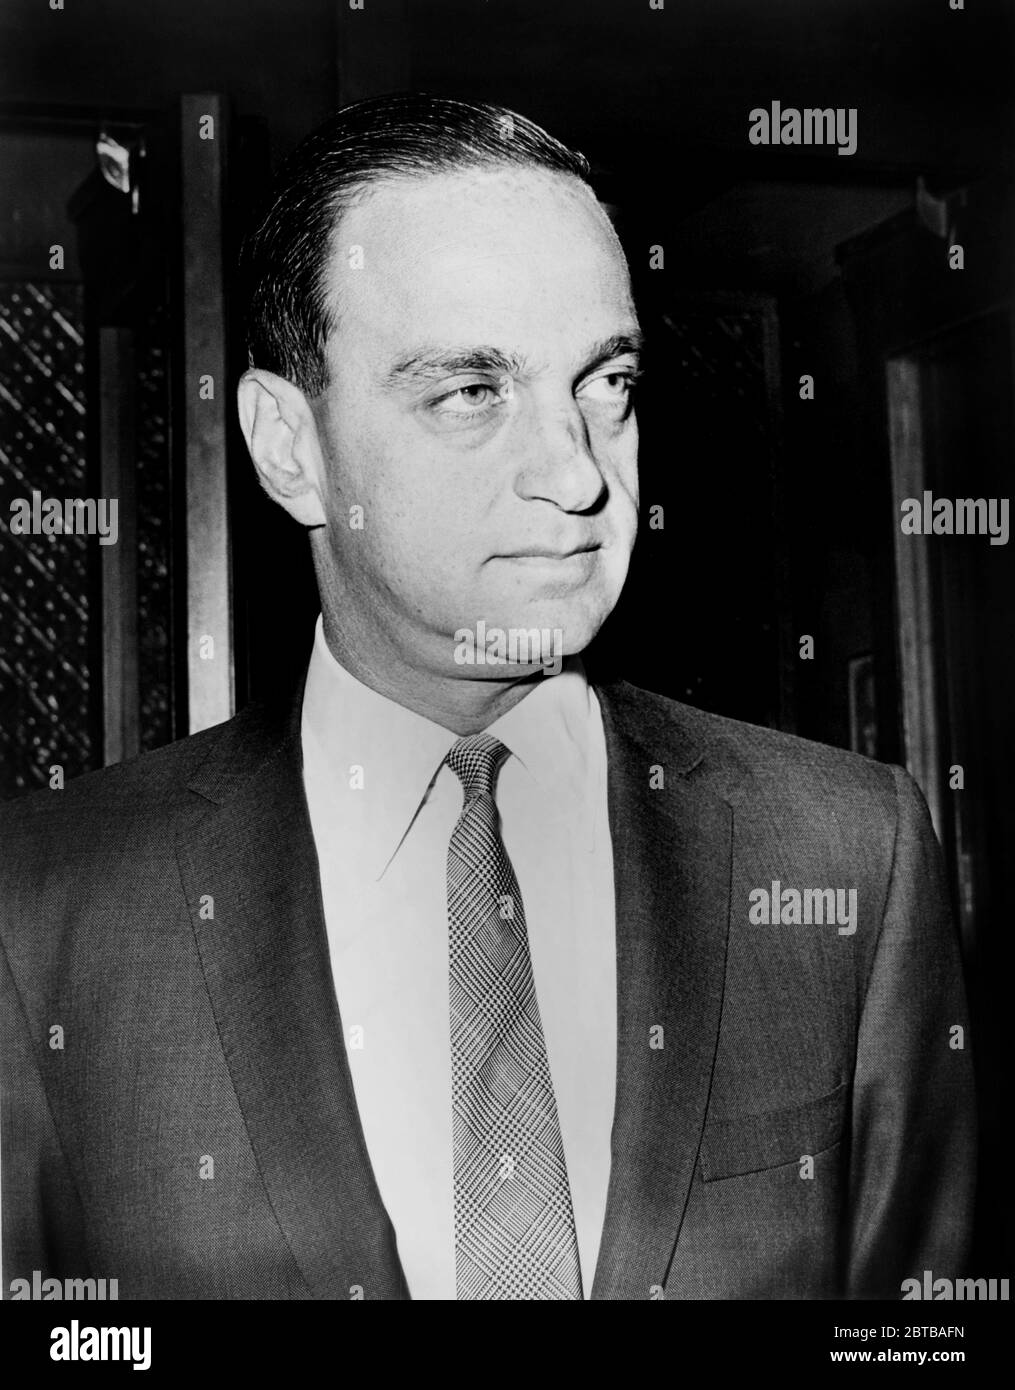 1964 , USA : l'avvocato americano ROY M. COHN ( 1927 - 1986 ), capo consigliere del senatore Joseph McCarthy nel 1953-1954, anticomunismo e omosessualità politica persecuzione . Chon è salito alla preminenza come procuratore del Dipartimento di Giustizia degli Stati Uniti al processo di spionaggio di JULIUS ed ETHEL ROSENBERG , che ha concluso con le esecuzioni di morte dei Rosenbergs in 1953. Wasone dei principali fissatori politici e avvocato personale di Donald TRUMP dal 1973 al 1985 . Nel 1986 Cohn fu disbardato dalla divisione Appellate della Corte Suprema dello Stato di NY per condotta non etica e morì settimane dopo per malattia legata all'AIDS Foto Stock